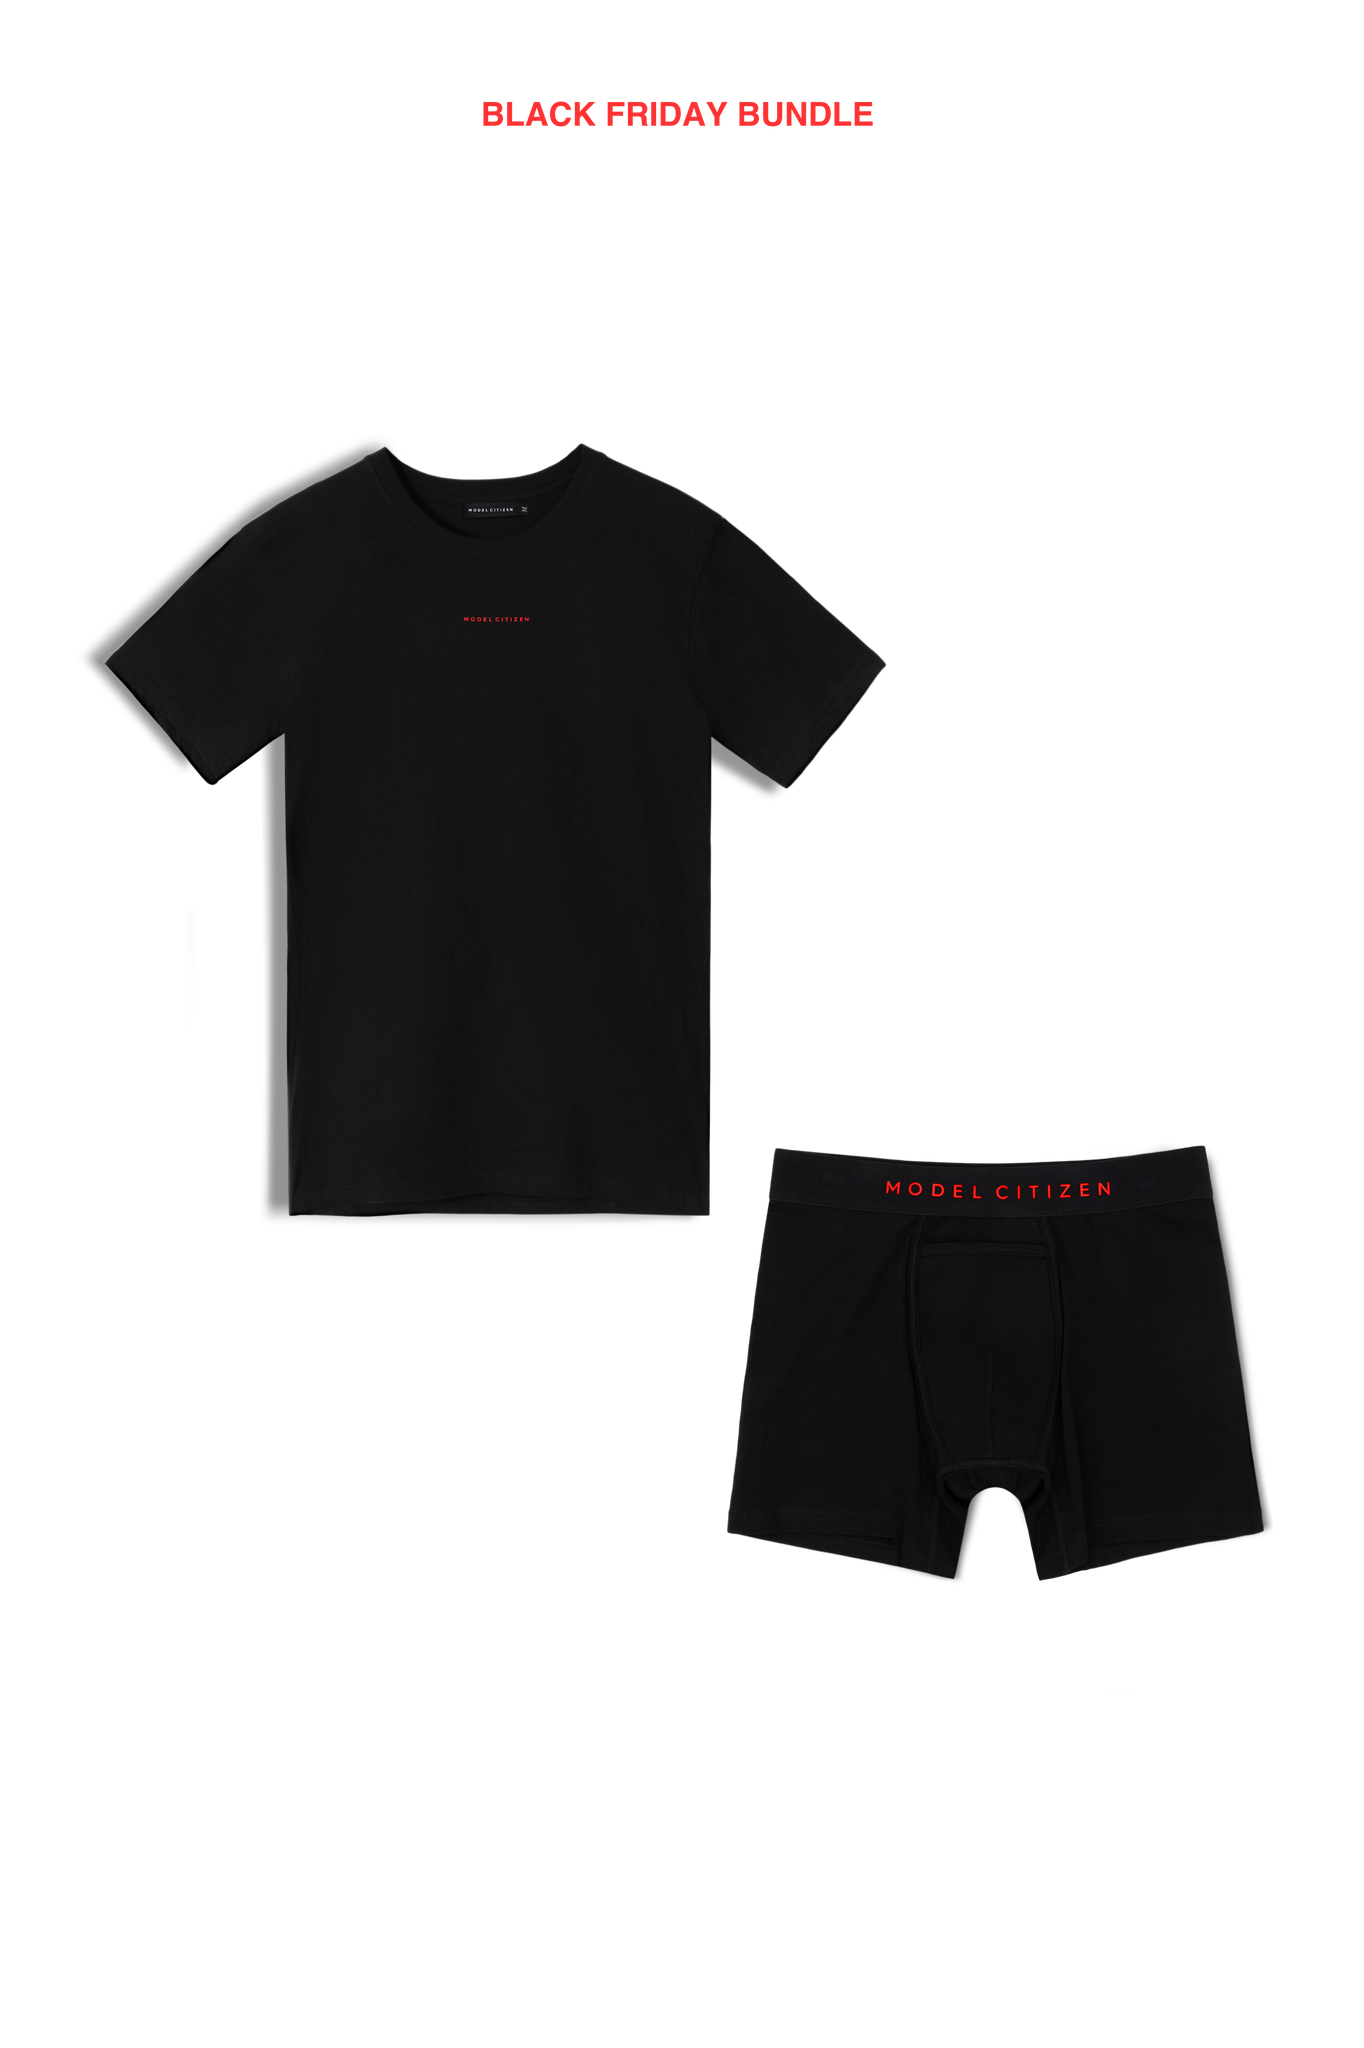 BLACK FRIDAY BUNDLE - Red Logo Tshirt & Breifs